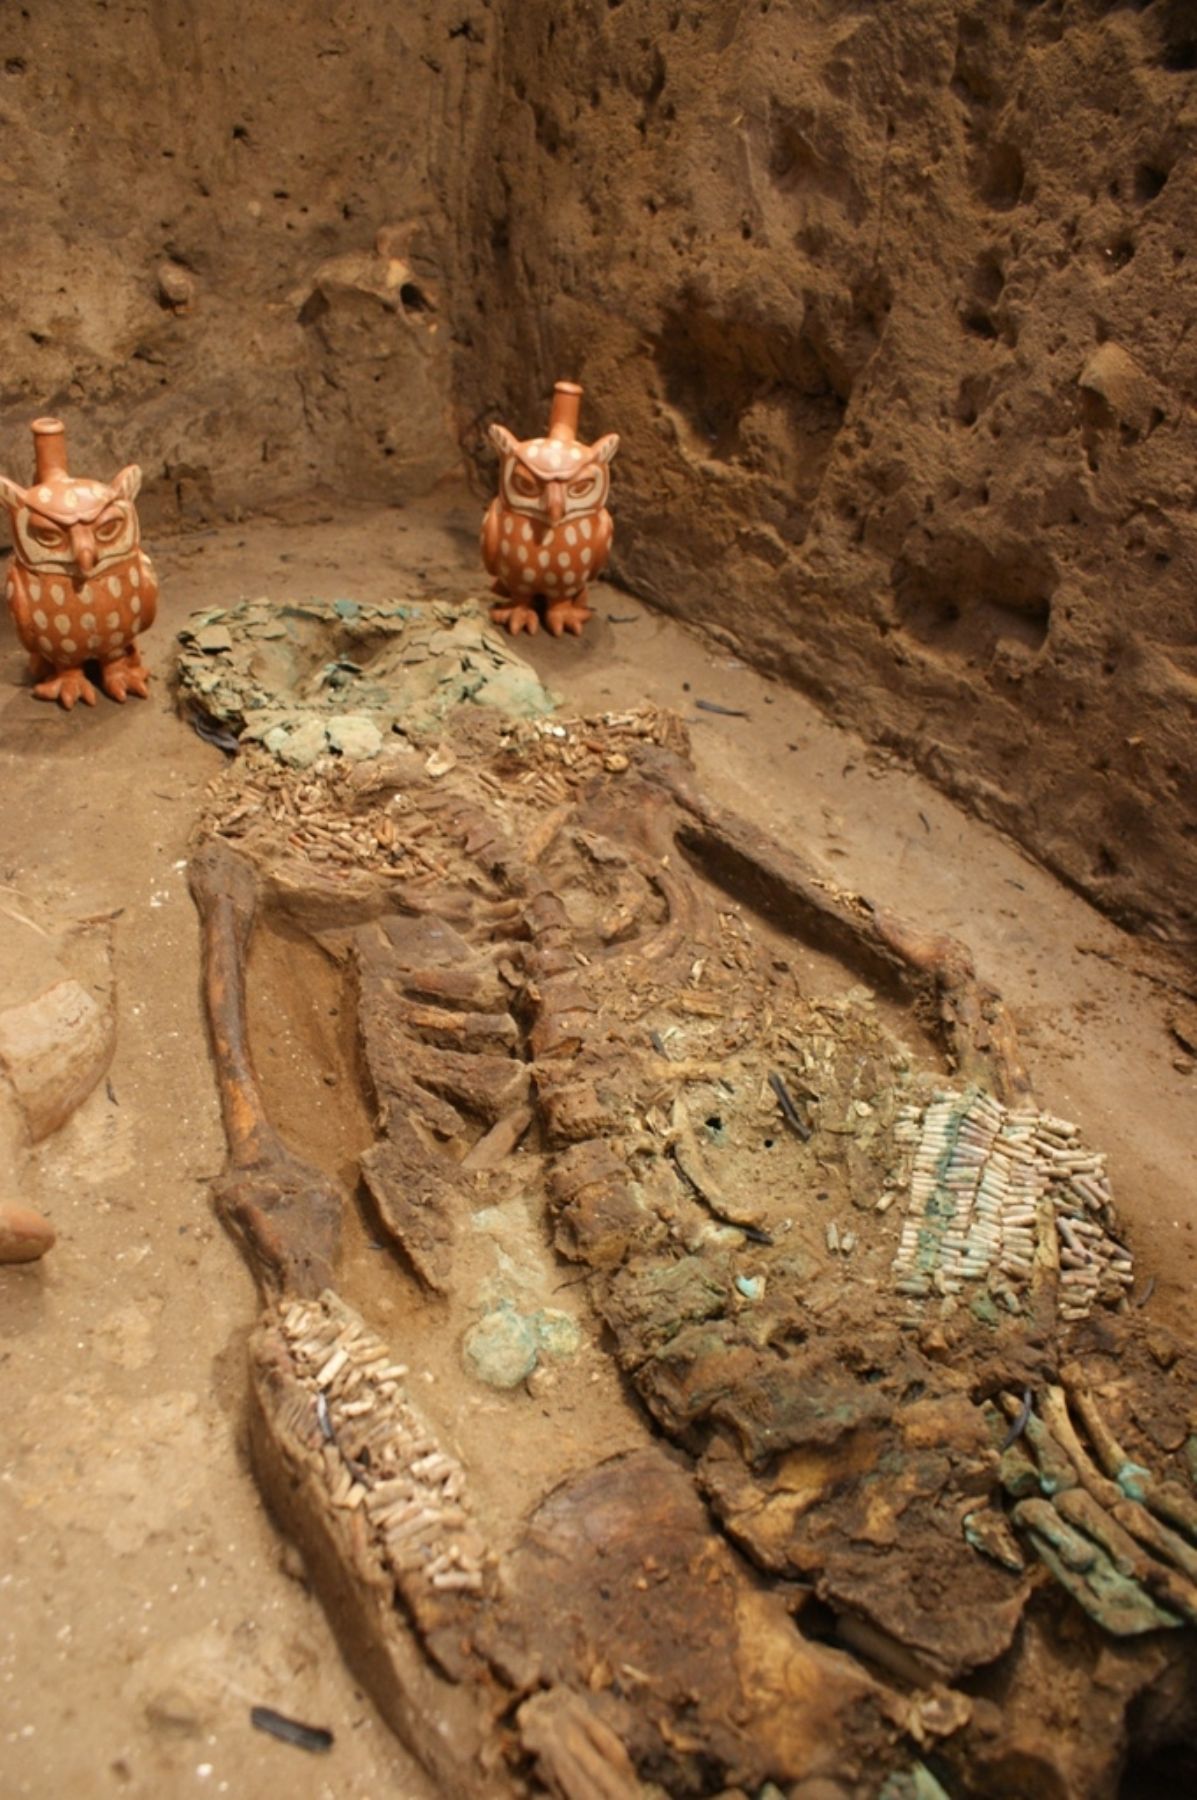 Joven noble hallado en tumba 15 del complejo arqueológico de Huaca Rajada-Sipán. Foto: ANDINA/Silvia Depaz.